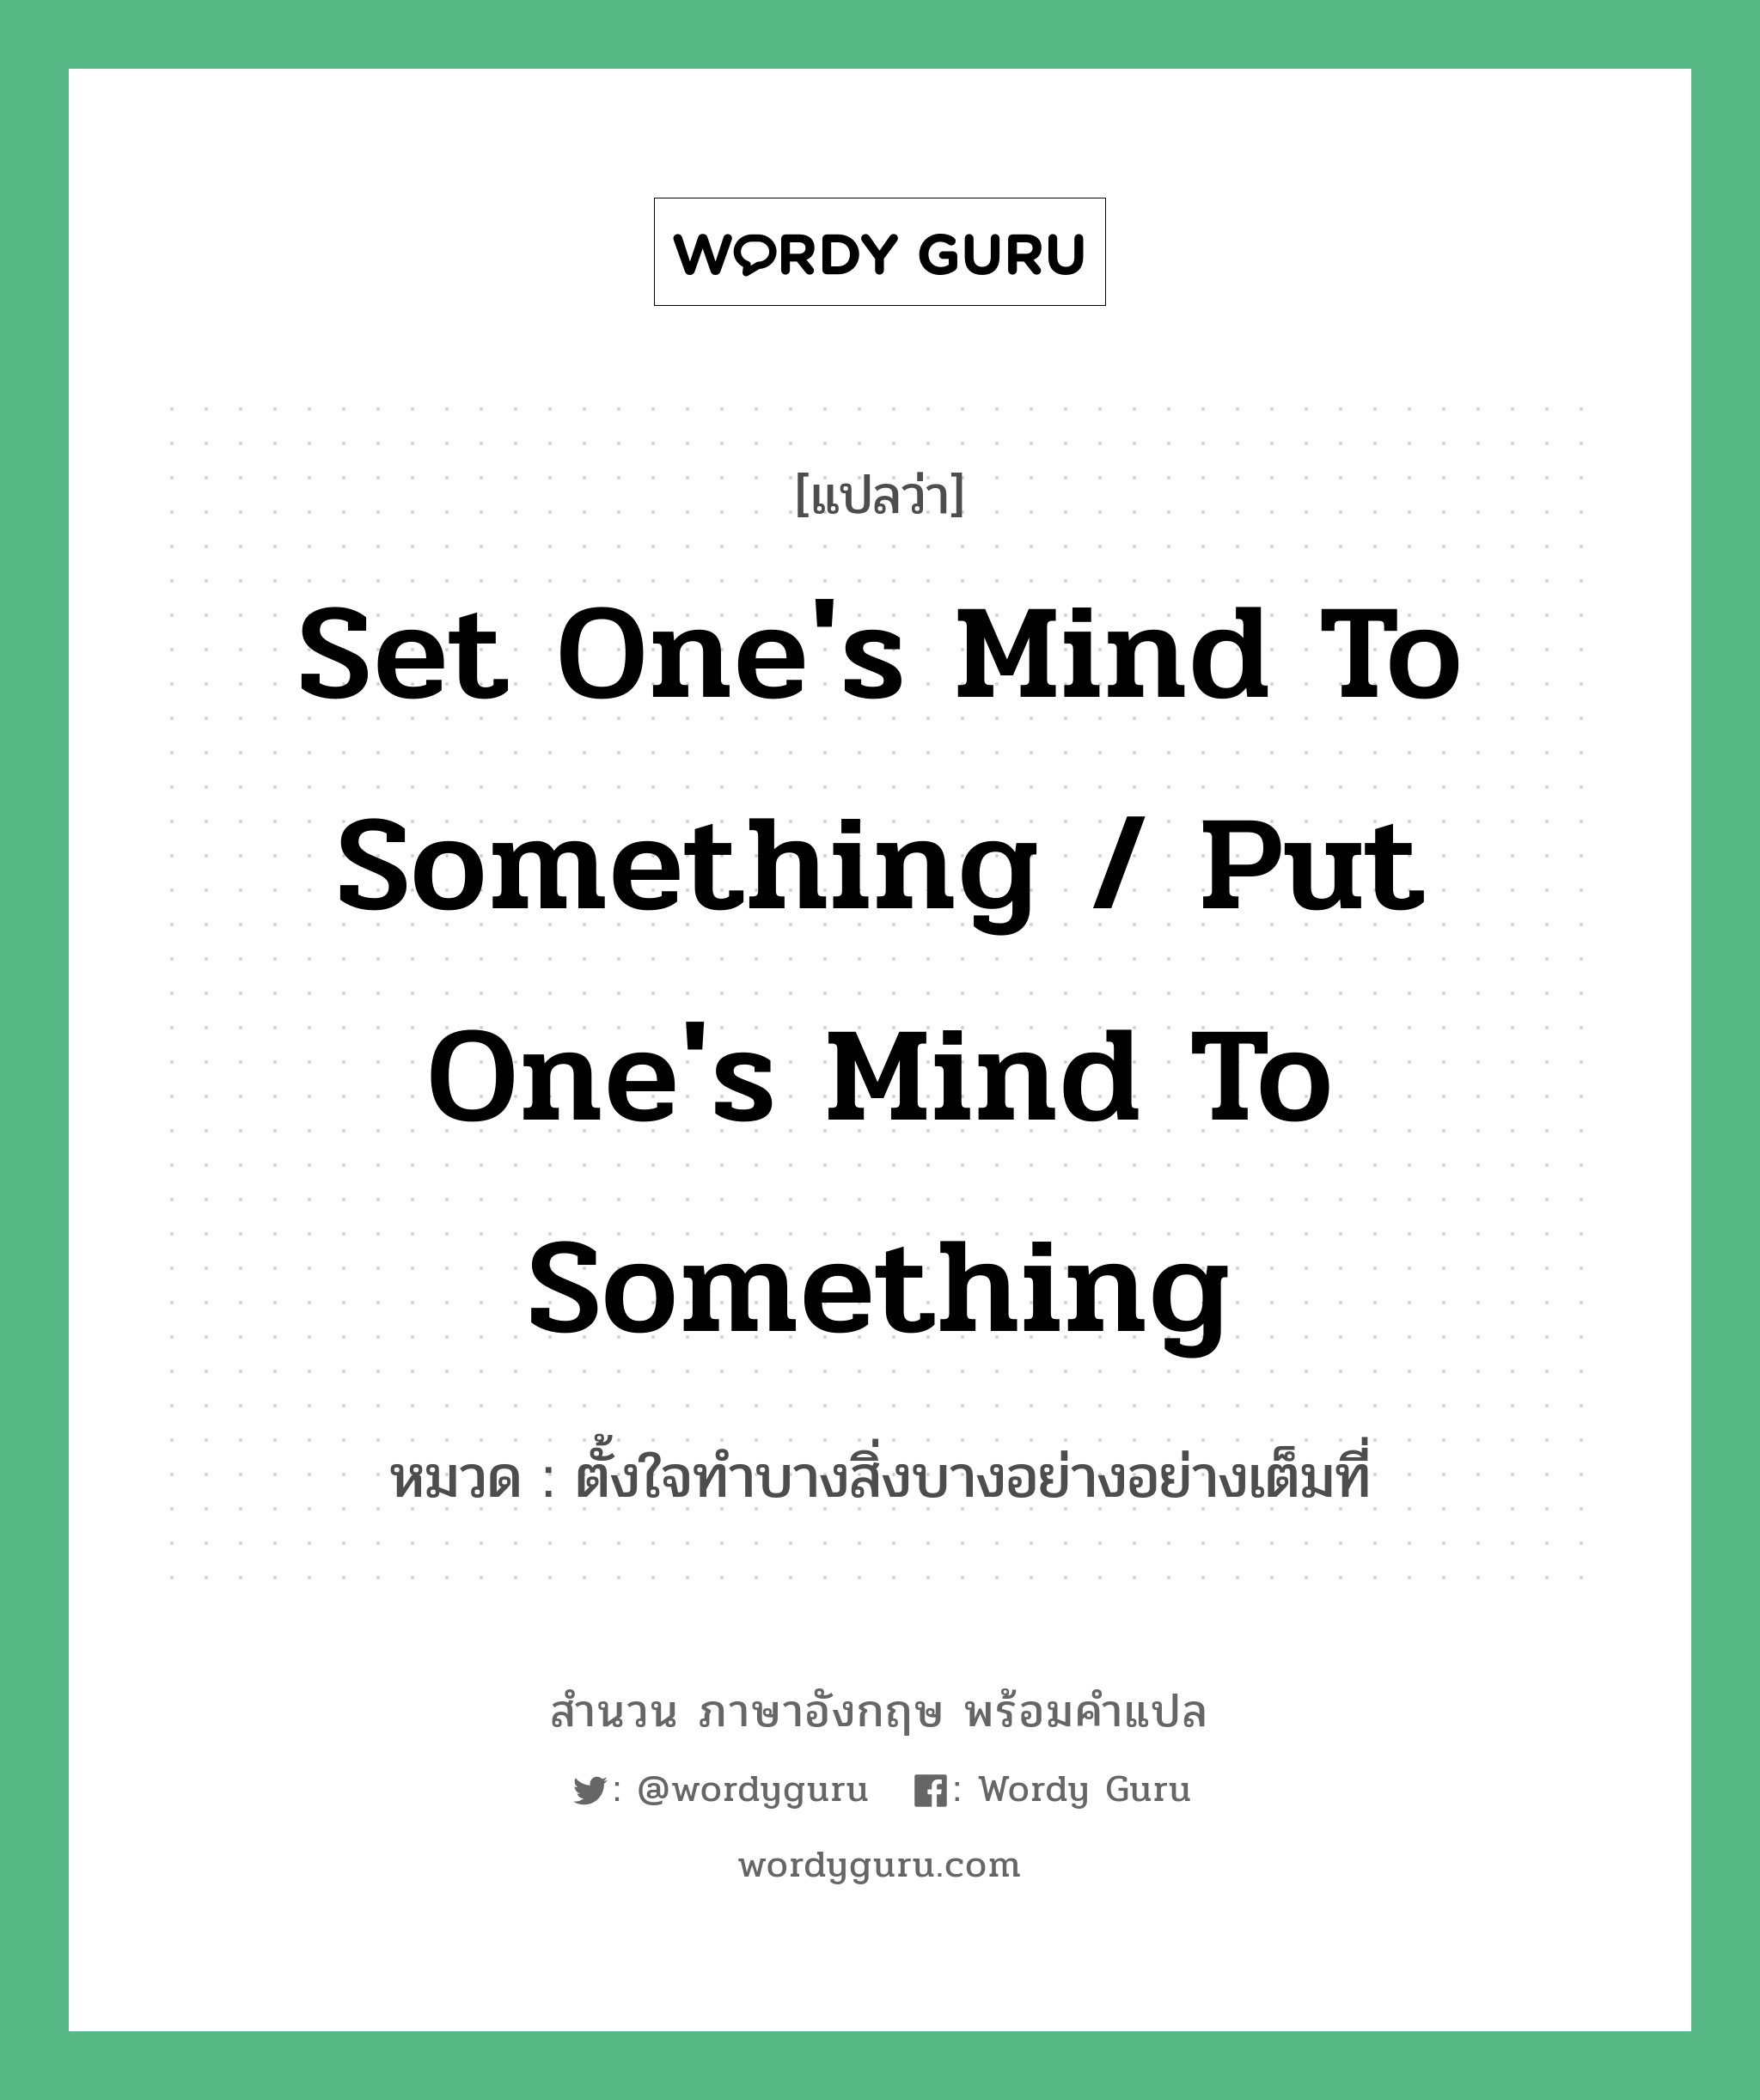 ตั้งใจทำบางสิ่งบางอย่างอย่างเต็มที่ ภาษาอังกฤษ?, สำนวนภาษาอังกฤษ ตั้งใจทำบางสิ่งบางอย่างอย่างเต็มที่ แปลว่า ตั้งใจทำบางสิ่งบางอย่างอย่างเต็มที่ หมวด Set one's mind to something / put one's mind to something